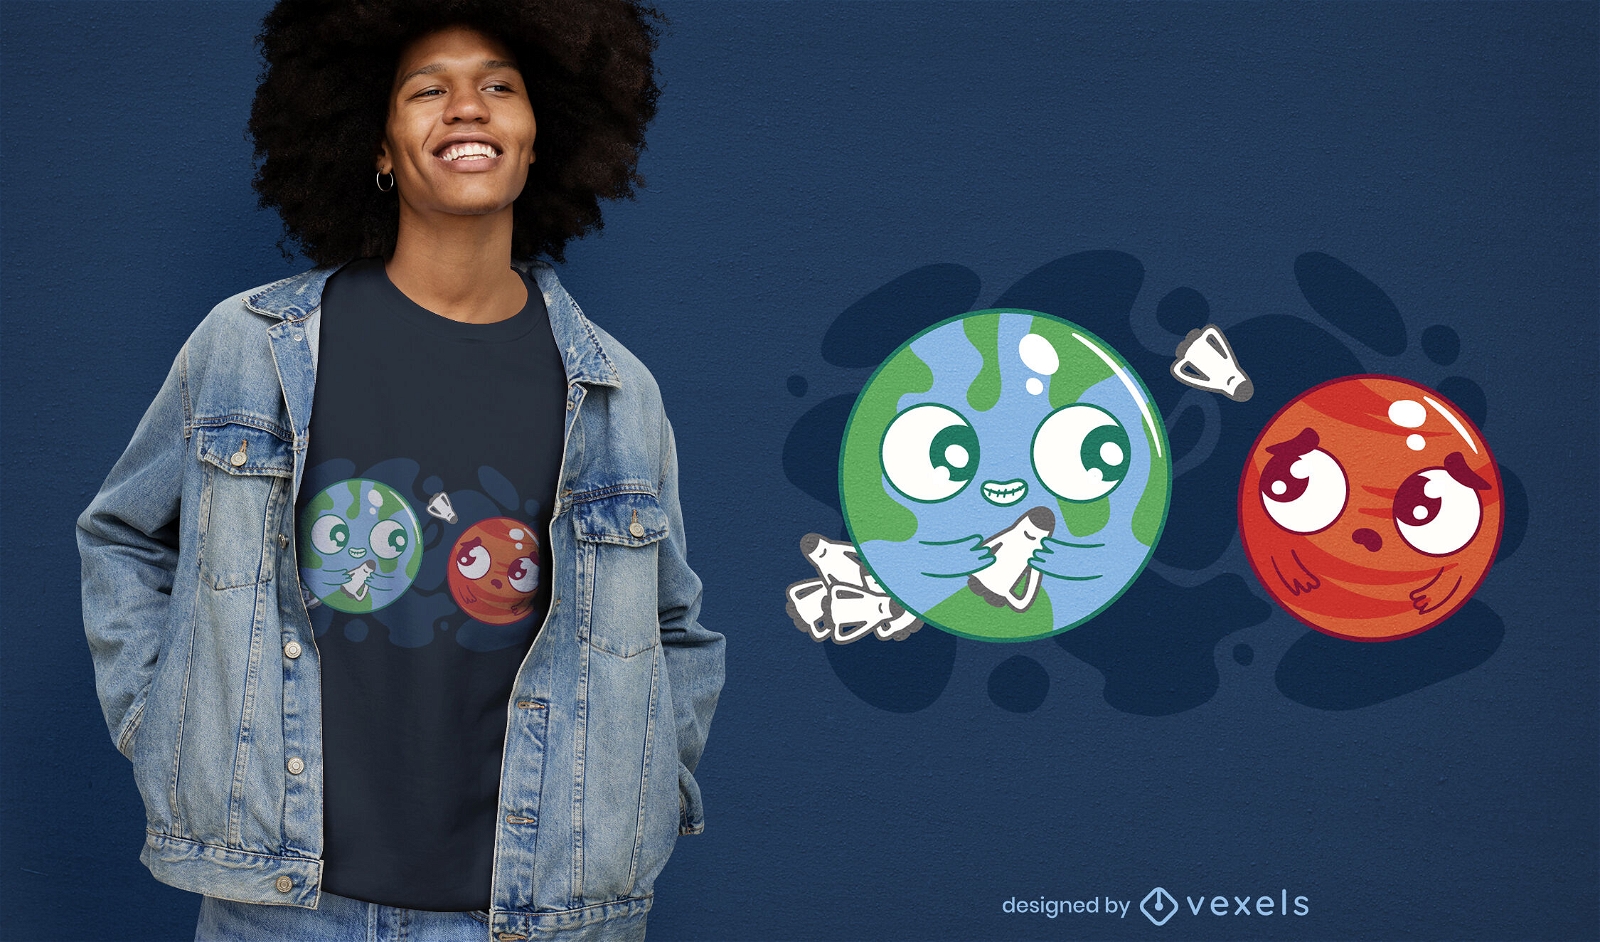 Dise?o de camiseta de la Tierra invadiendo el espacio de Marte.